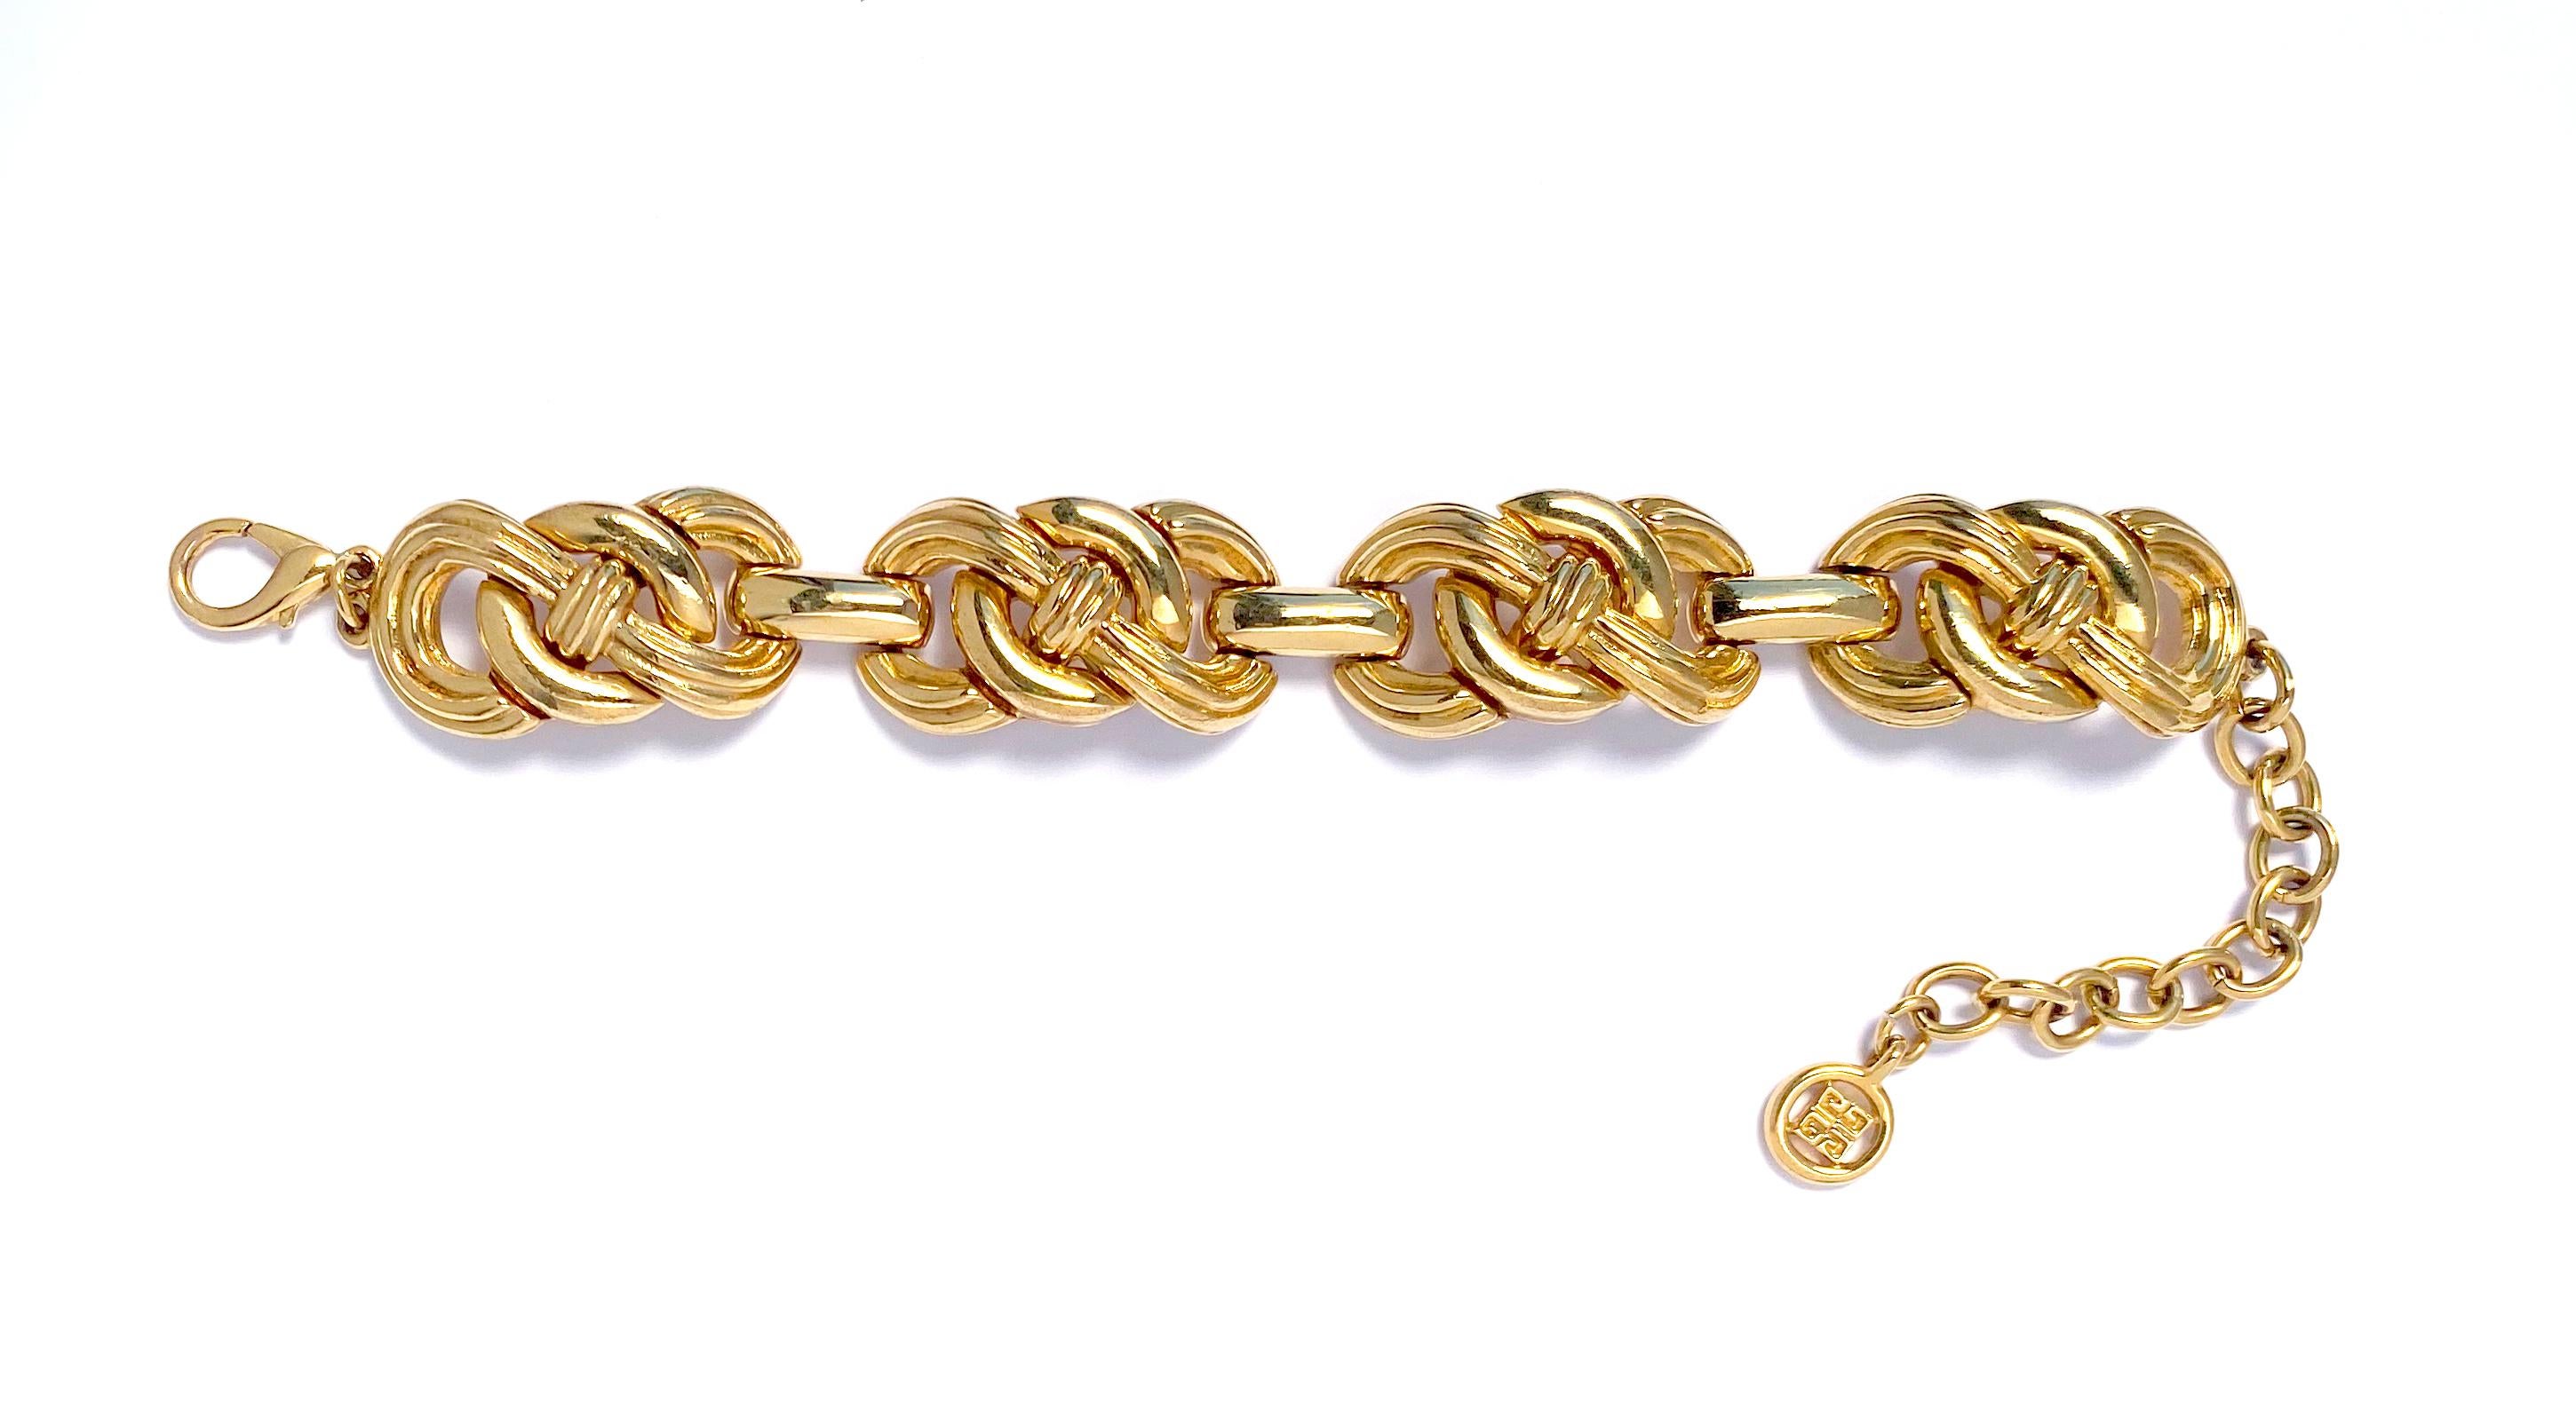 Bracelet en chaîne Vintage Givenchy des années 1980 avec de gros maillons ornés en métal doré.  Ce bracelet vintage présente des maillons polis en forme de nœuds ouverts, un fermoir à mousqueton et une chaîne de rallonge ornée du logo Givenchy.   Le